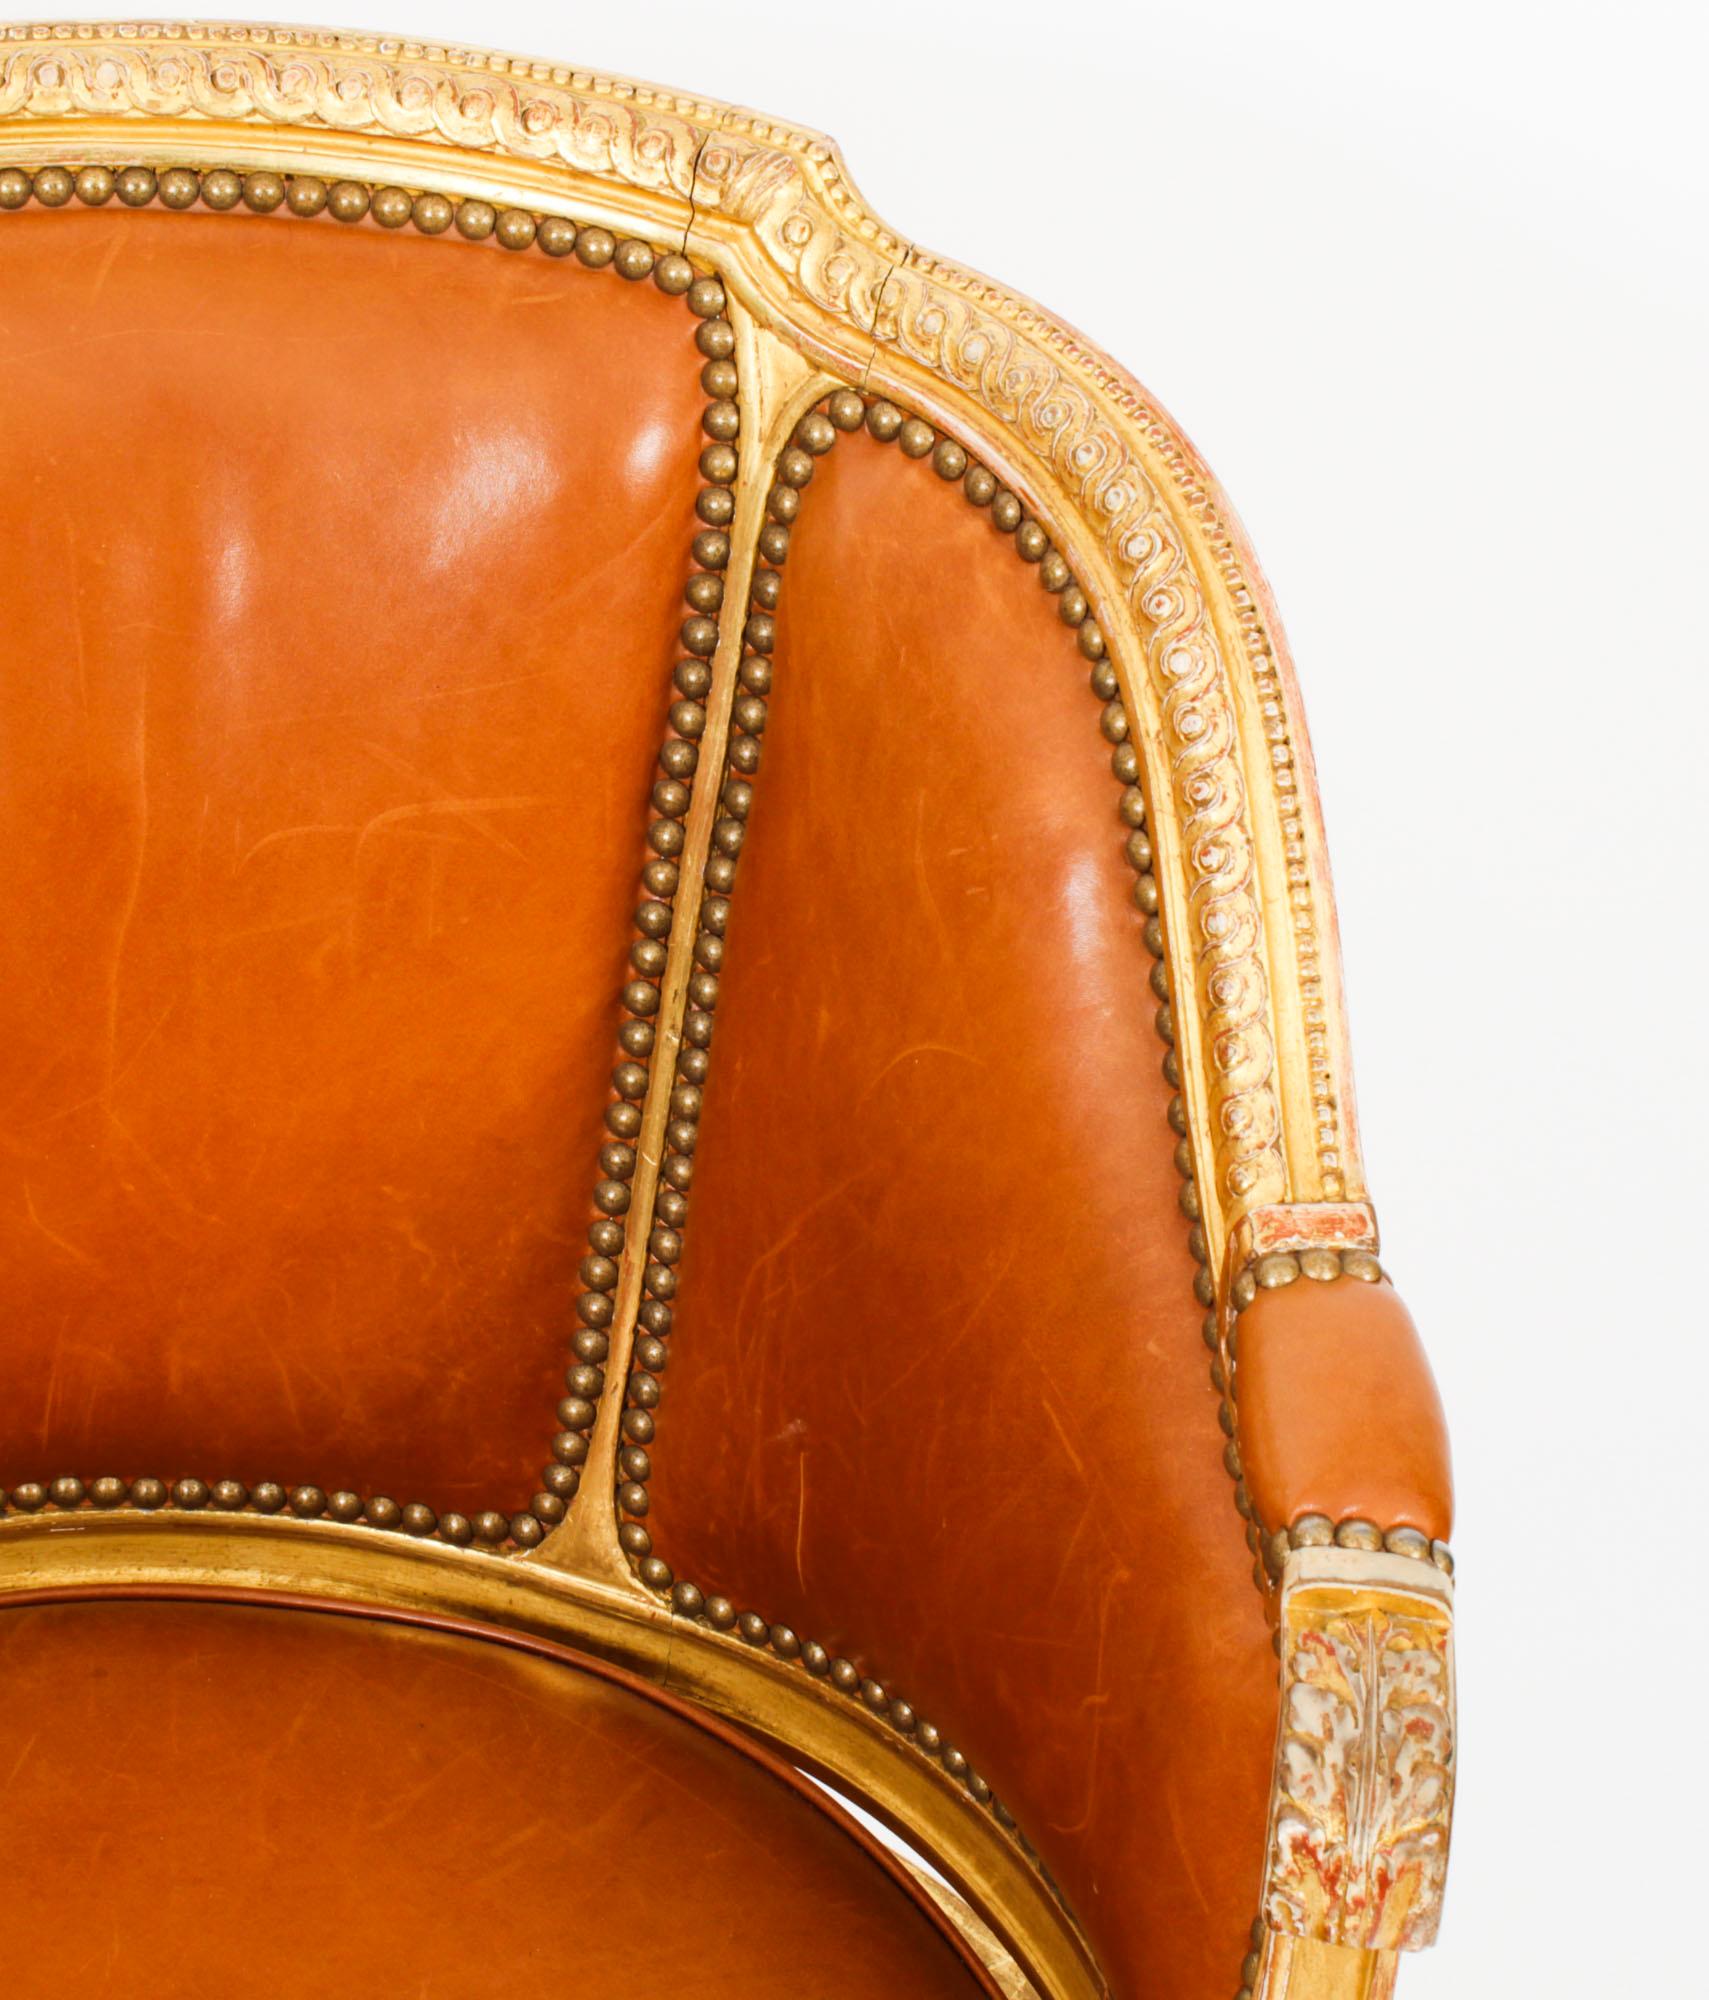 Leather Antique French Louis Revival Revolving Fauteuil de Bureau Desk Chair 19th C.